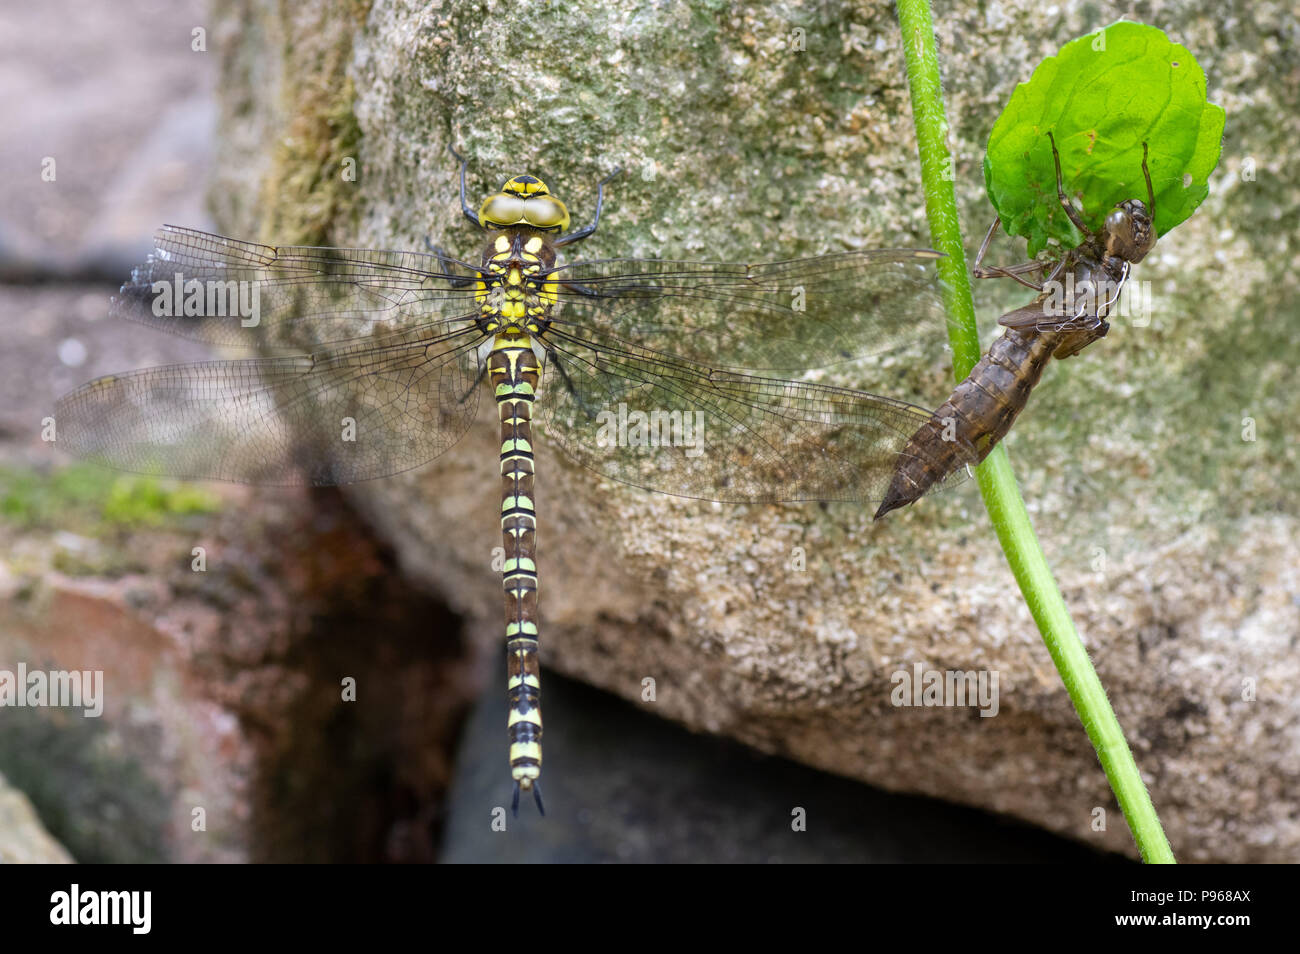 Sur (Aeshna cyanea hawker) dragonfly con exuvia. Hembra del insecto en el orden Odonata, familia Aeshnidae, junto a arrojar la piel larval Foto de stock